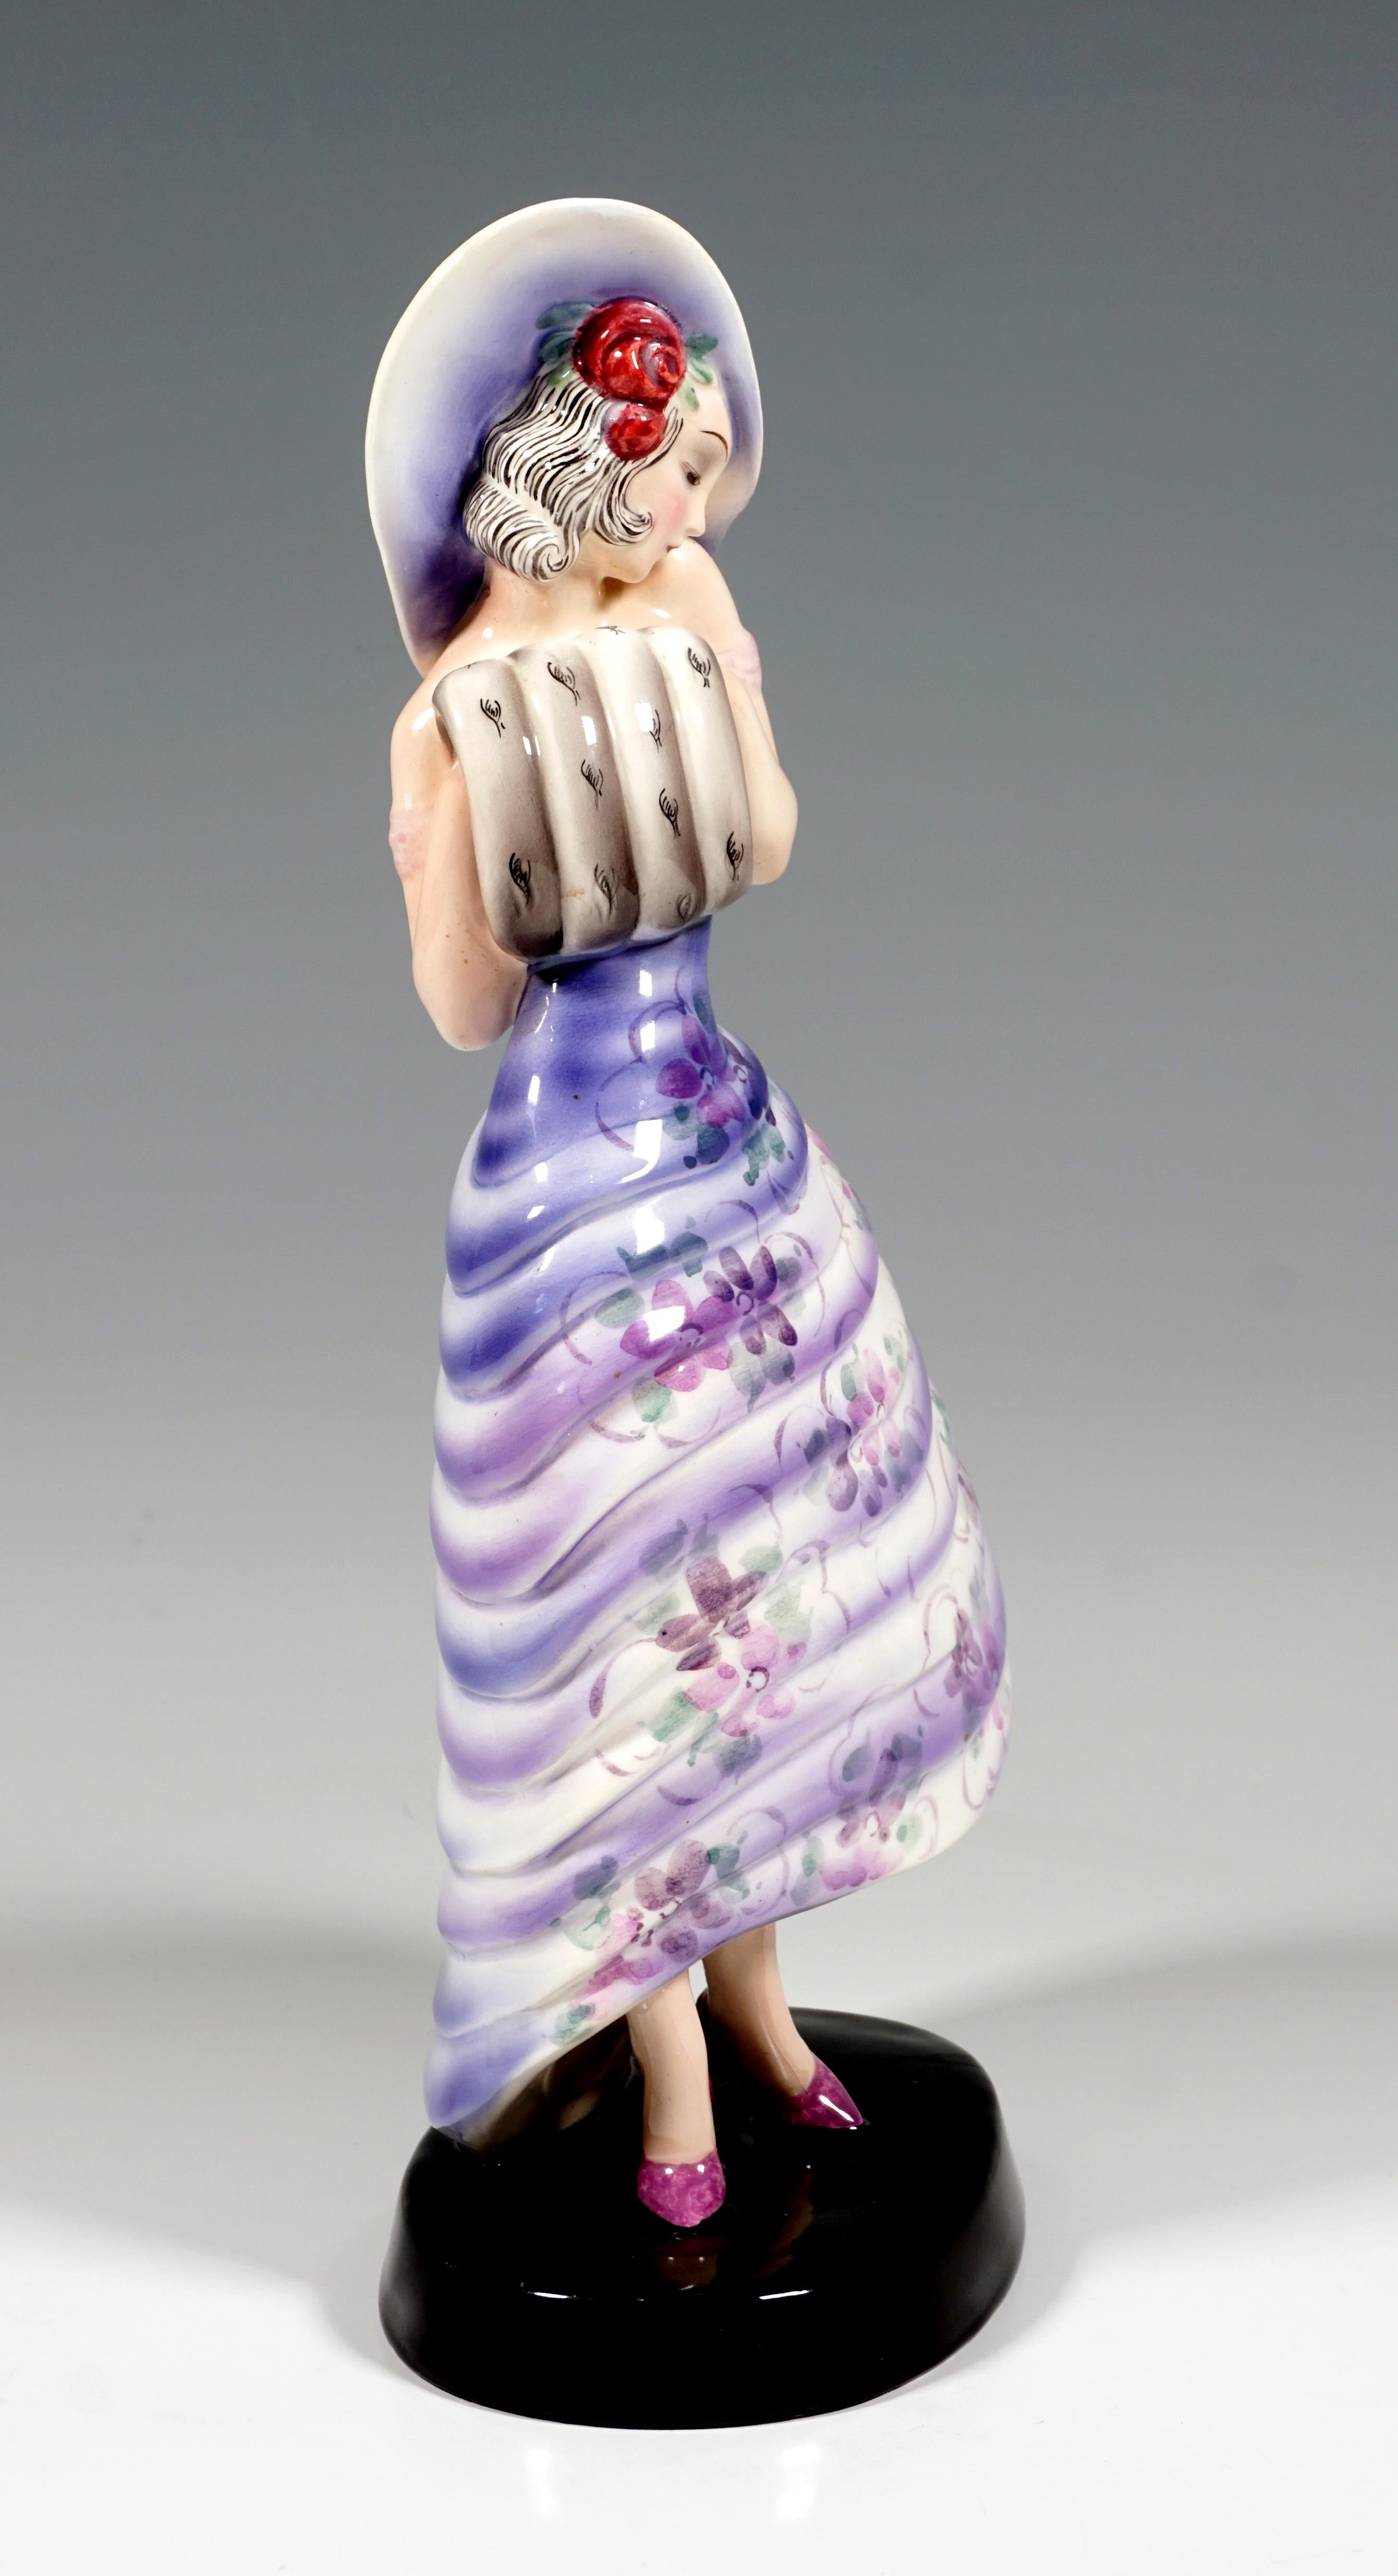 Rare figurine en céramique Art Déco de Goldscheider :
Représentation d'une dame élégante, debout, vêtue d'une robe à large jupe à volants avec un motif floral stylisé dans les tons violets et roses, des roses rouges ornent ses cheveux tombant sur